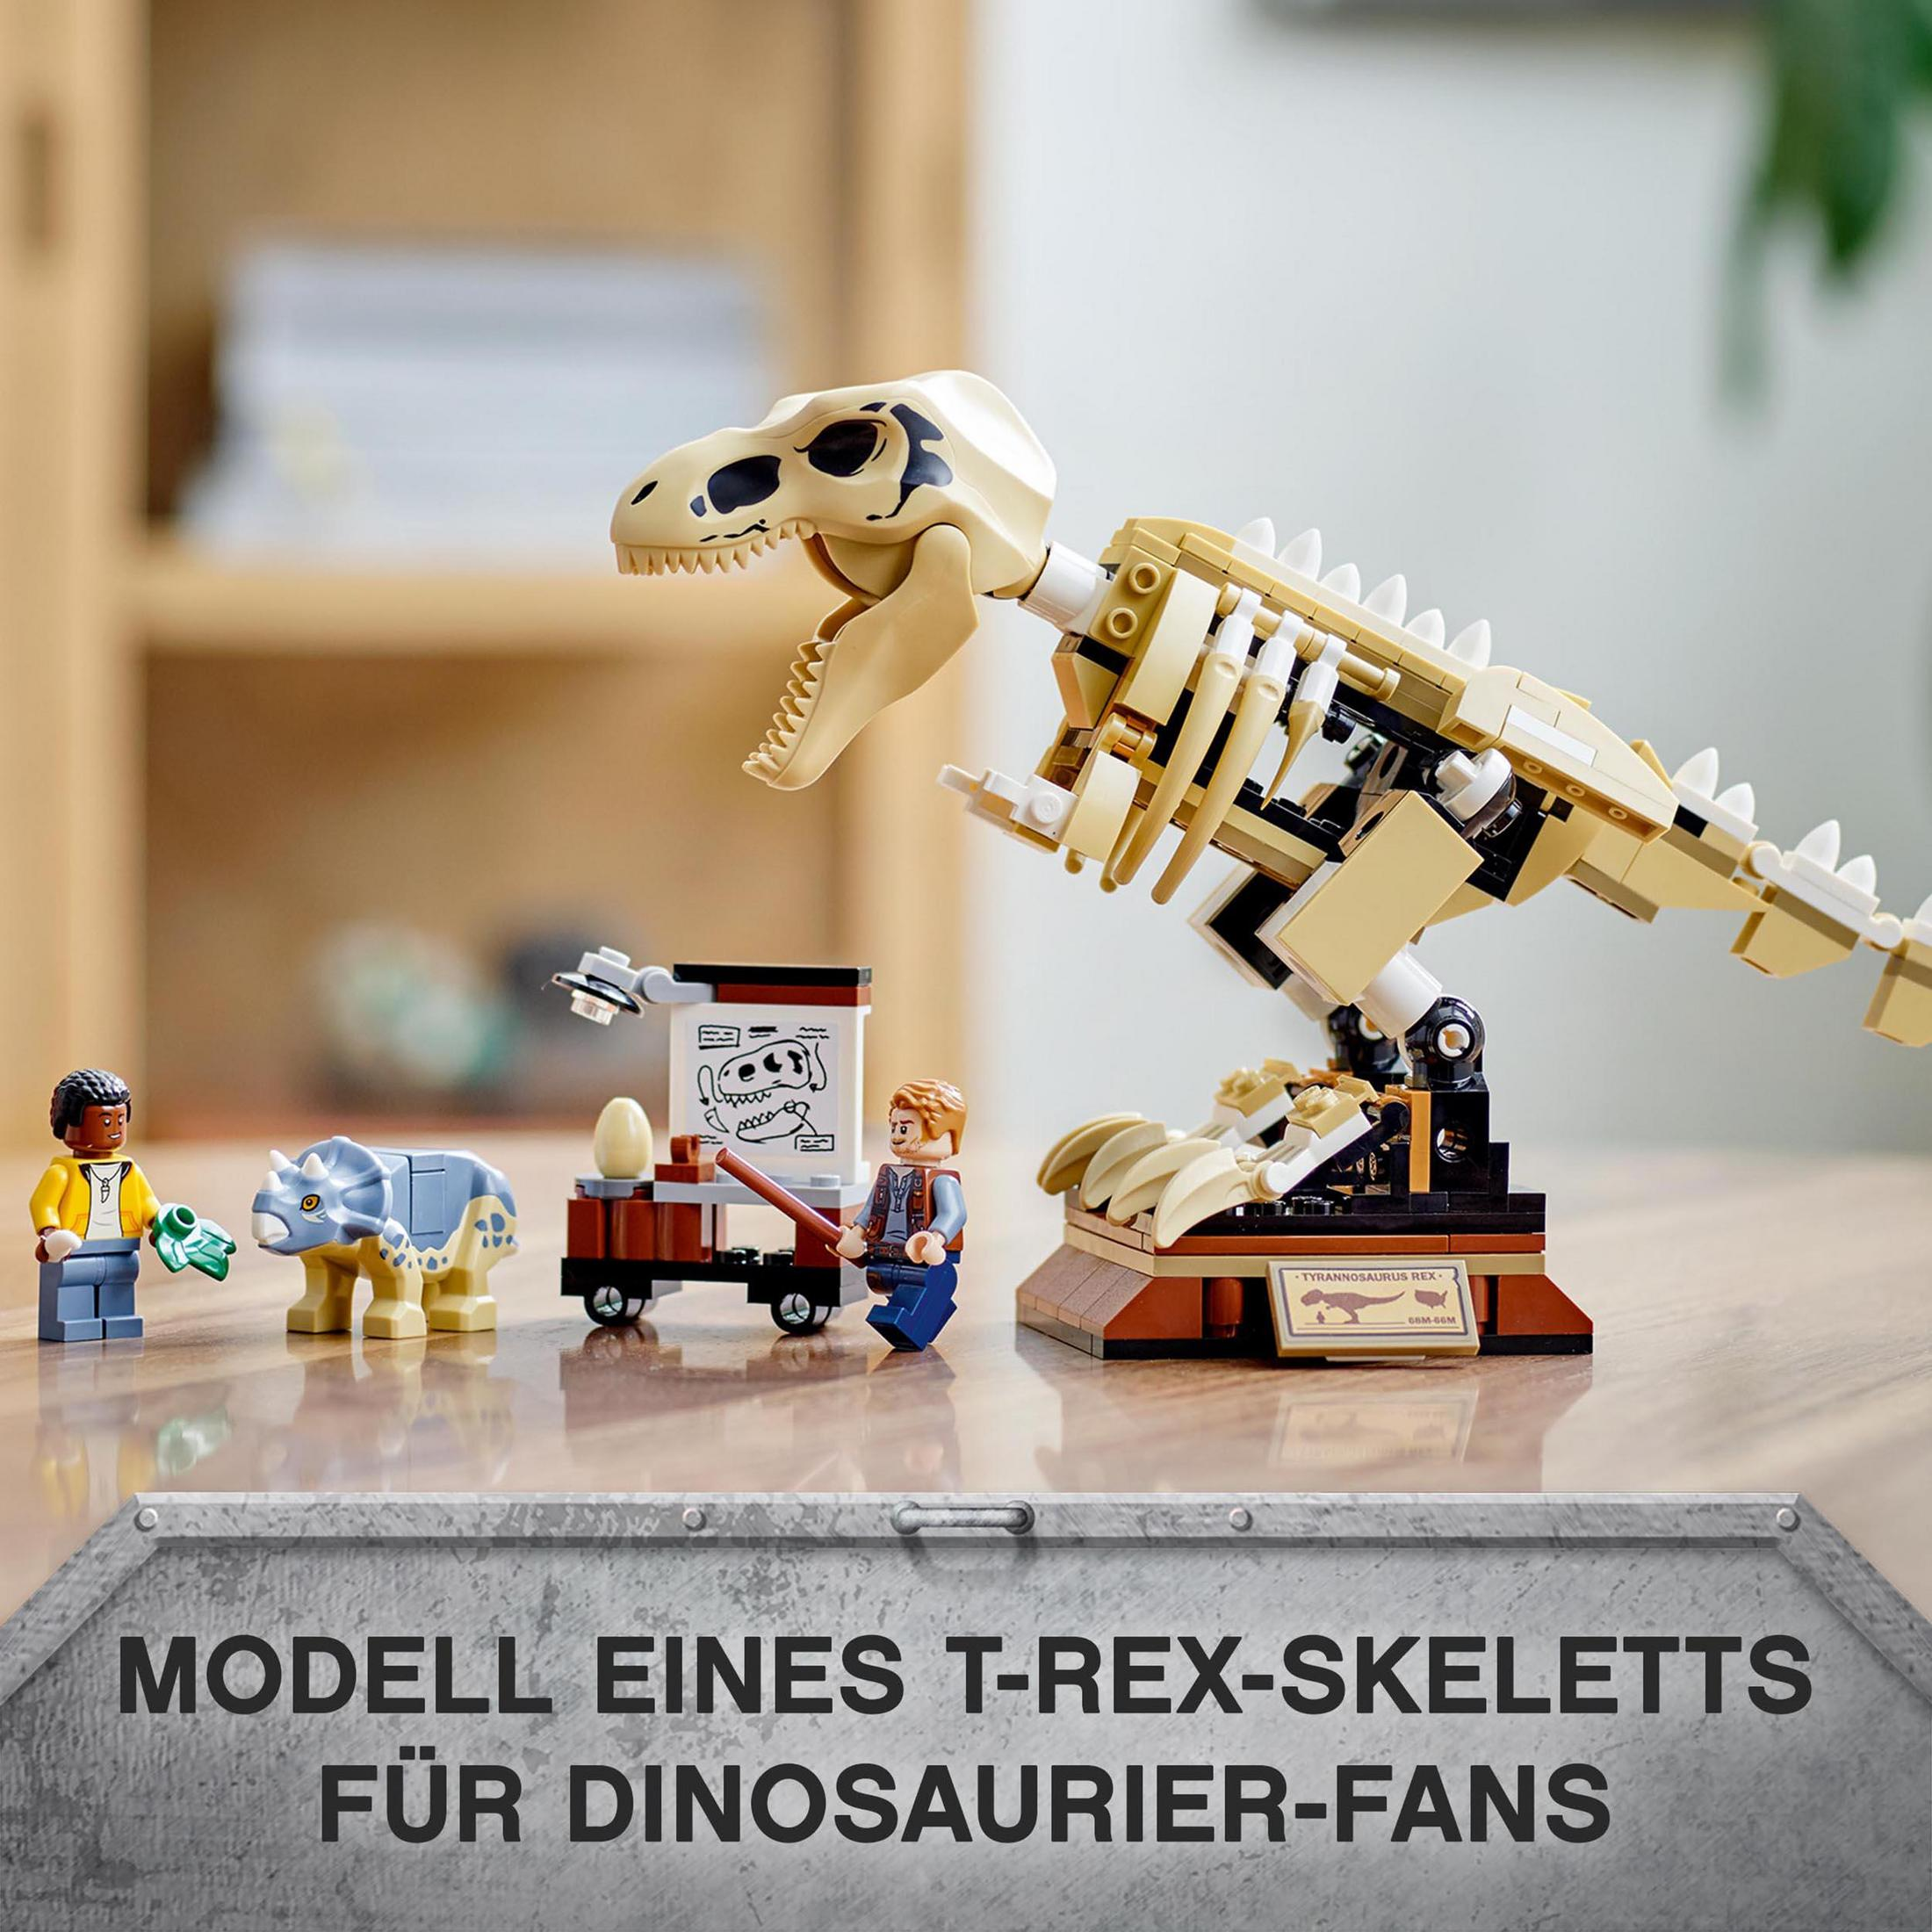 IN T.REX-SKELETT 76940 DER FOSSILIENAUSSTELLUNG LEGO Bausatz